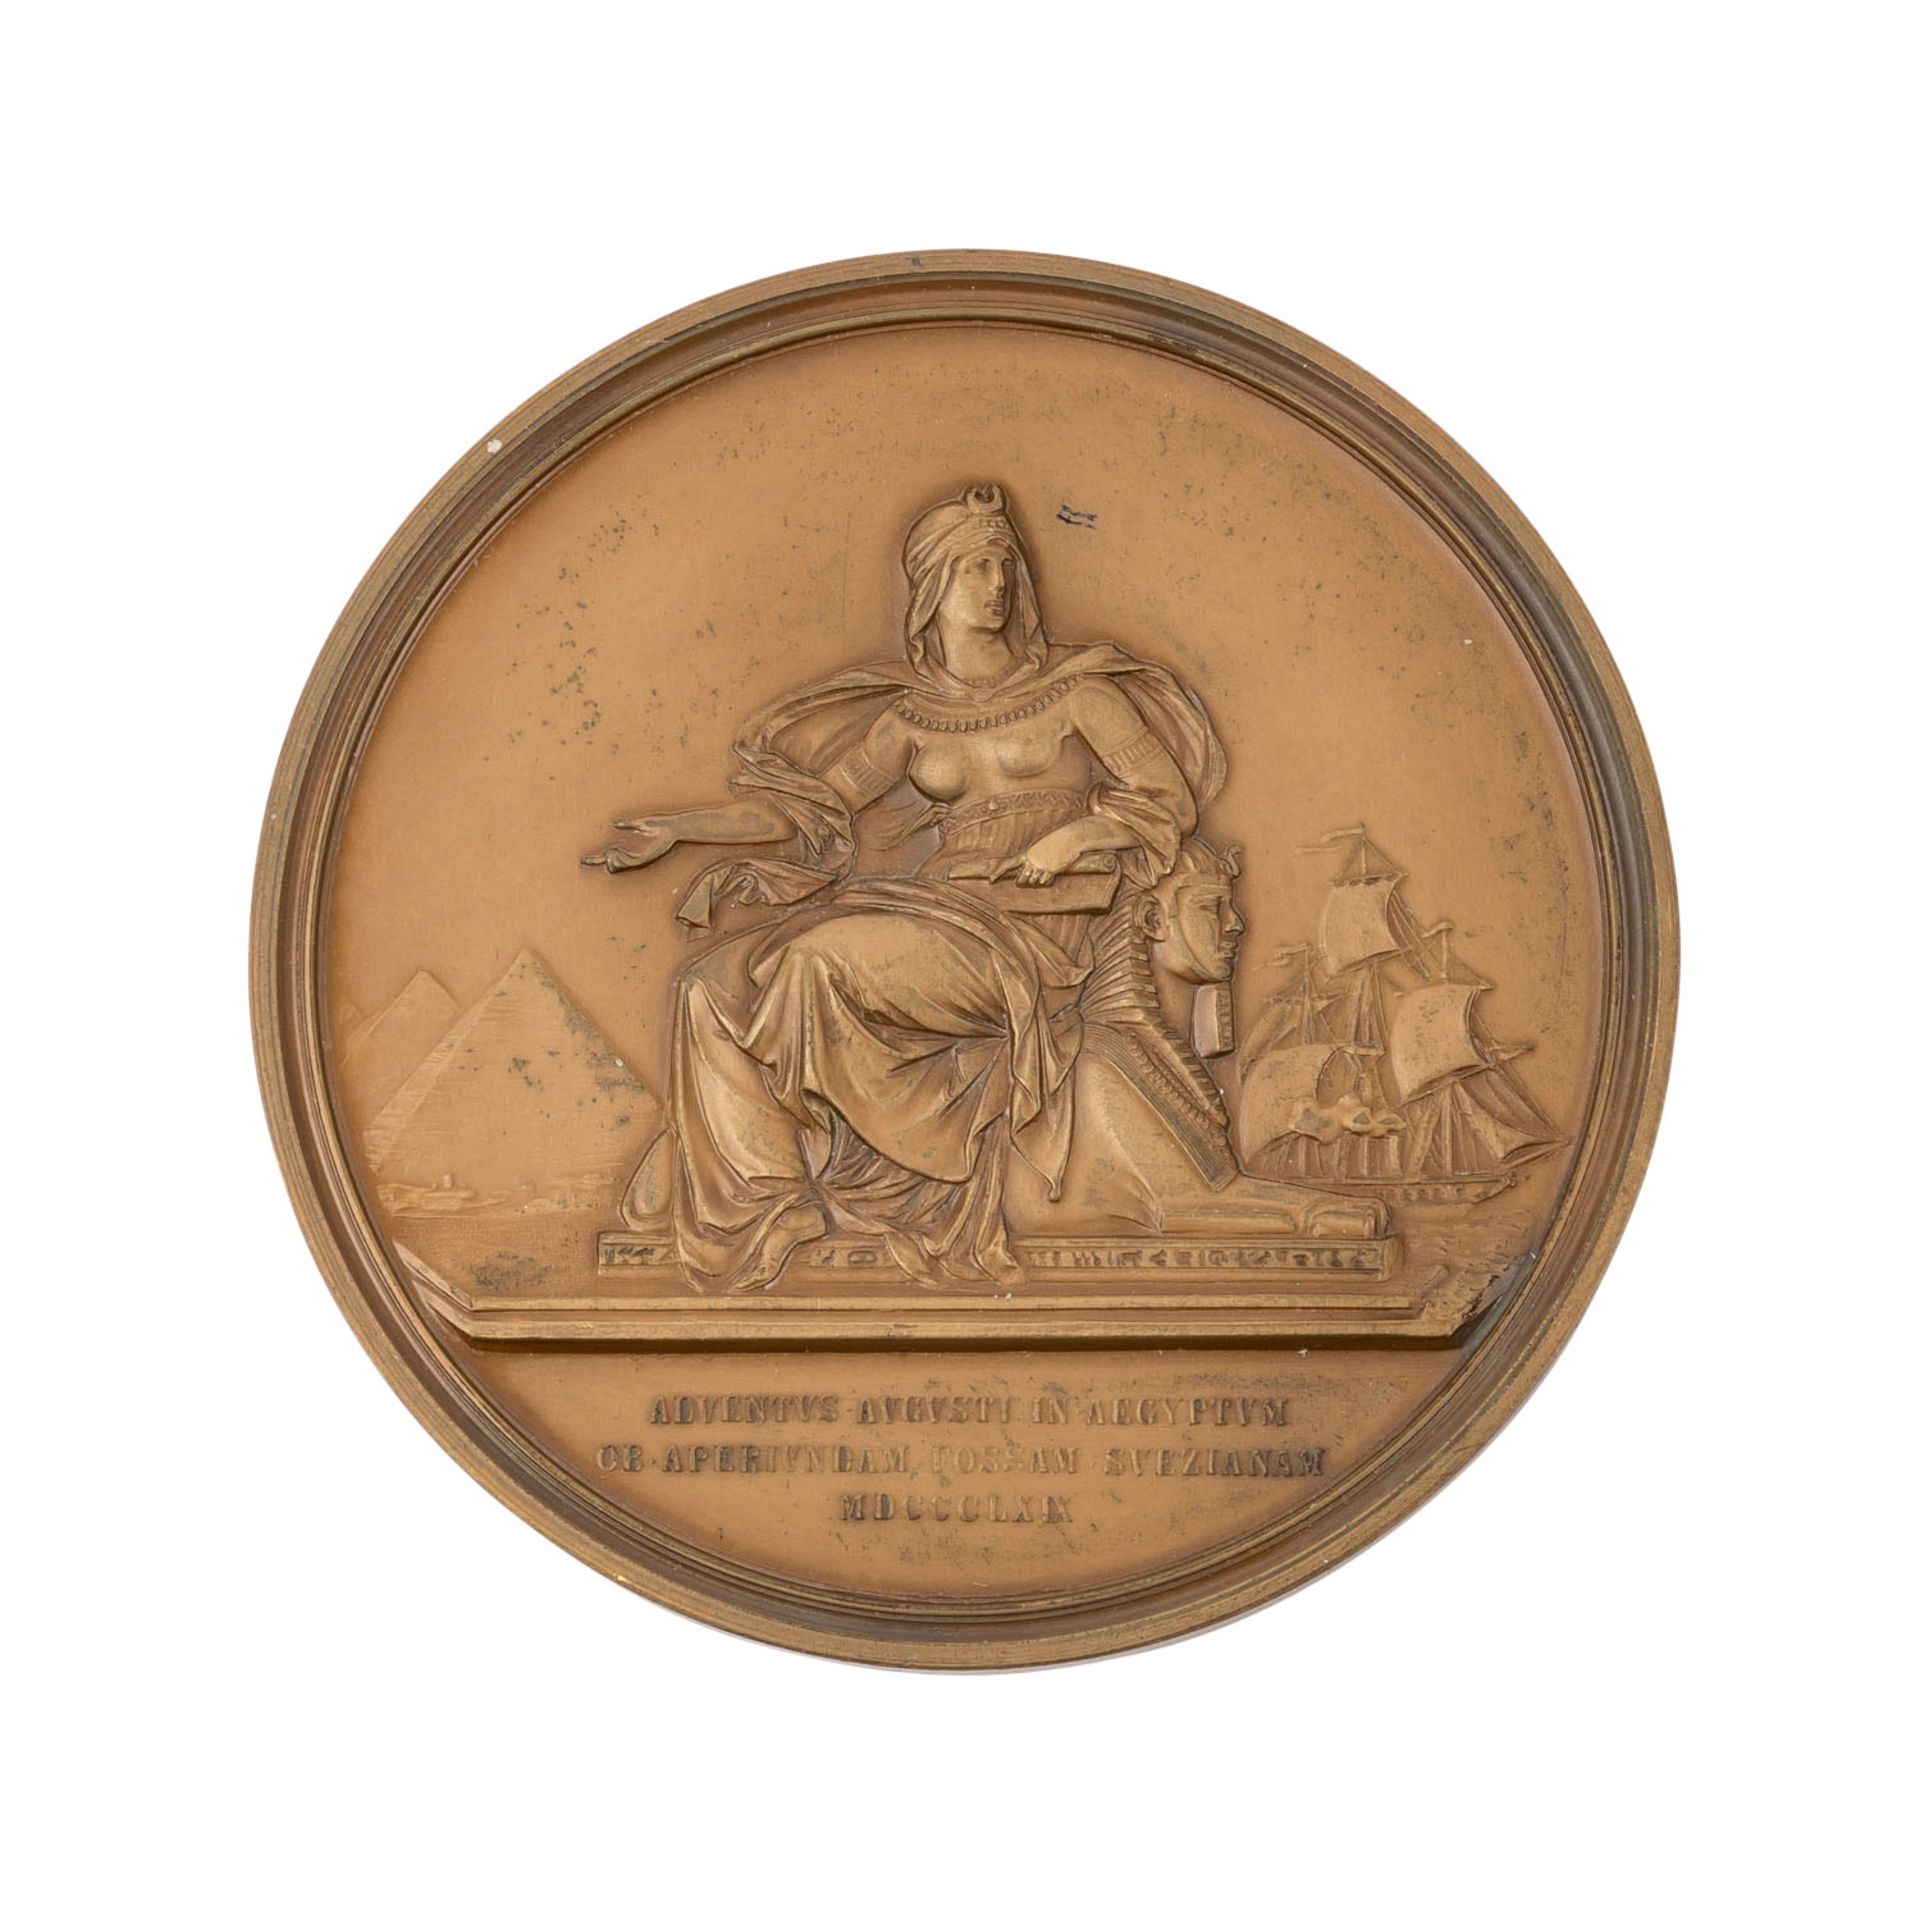 Österreich / Haus Habsburg - Eröffnung Suez Kanal, Bronze Medaille 1869, - Bild 2 aus 2